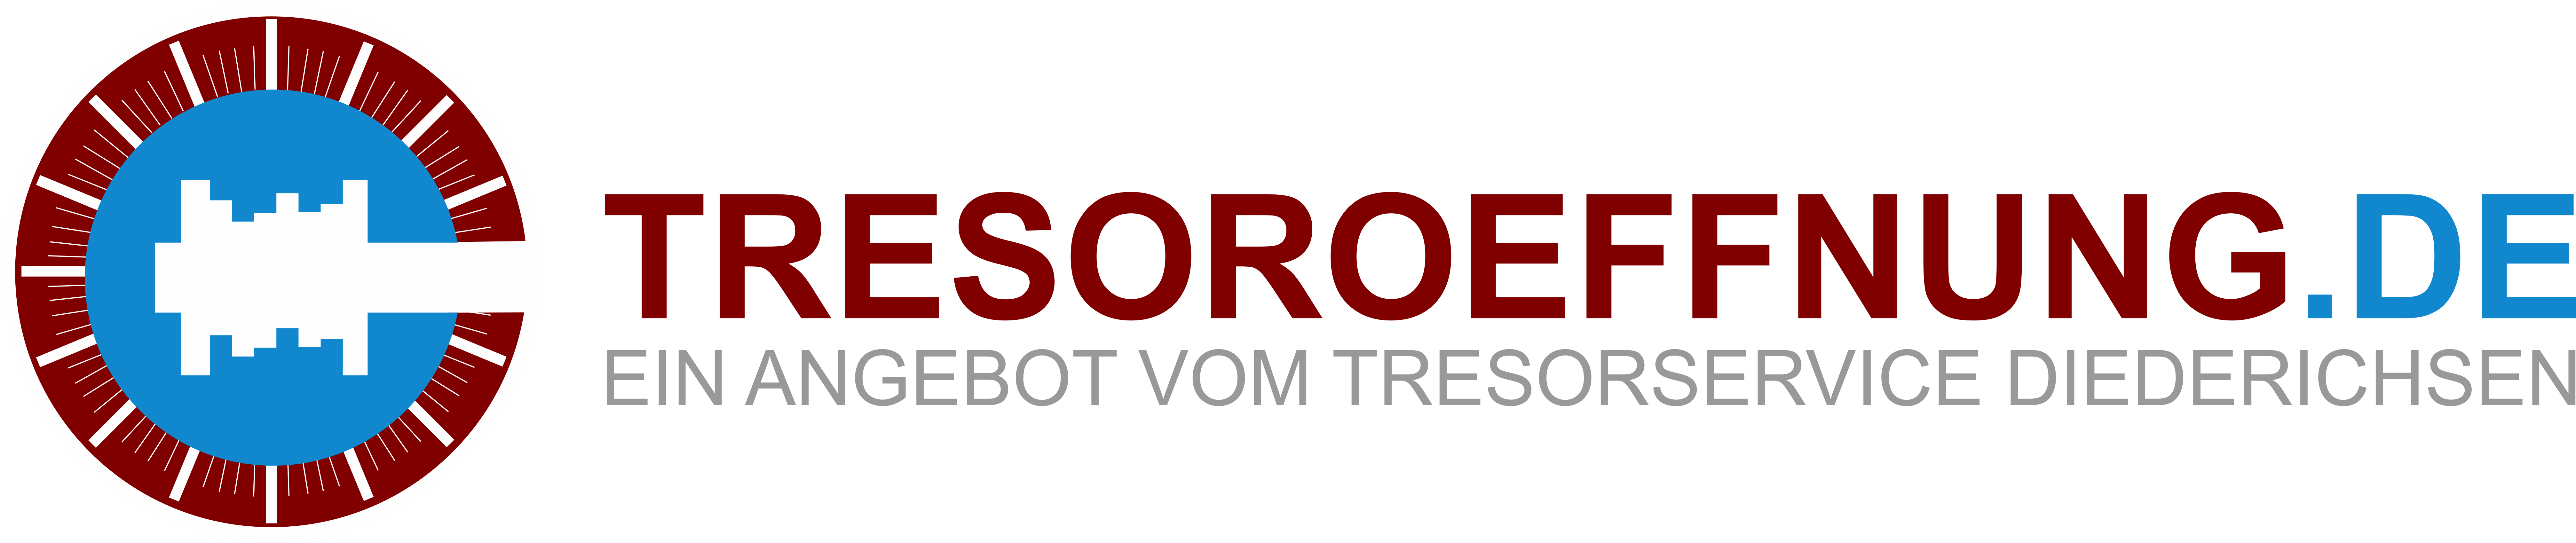 Logo Tresorservice Diederichsen